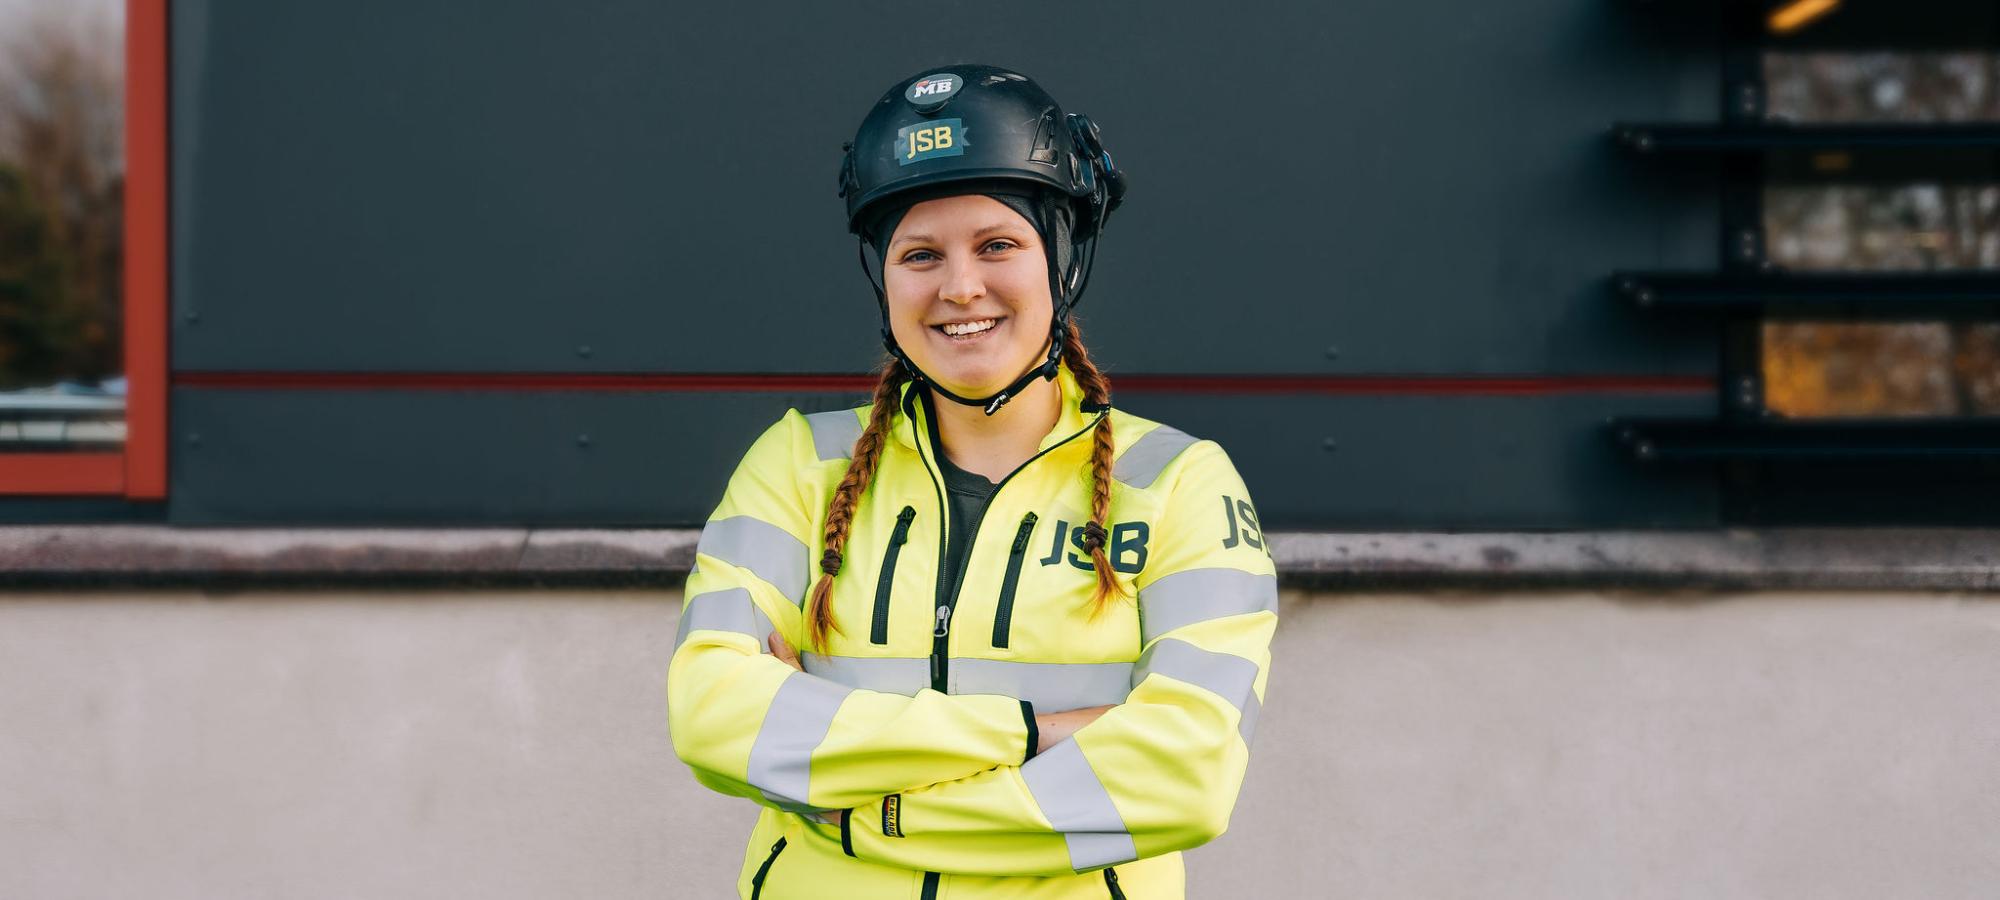 Cajsa Holmqvist, 26 år och Byggnadsträarbetare på JSB valdes i helgen till ny ordförande för Unga Byggare, Byggnads ungdomsorganisation.